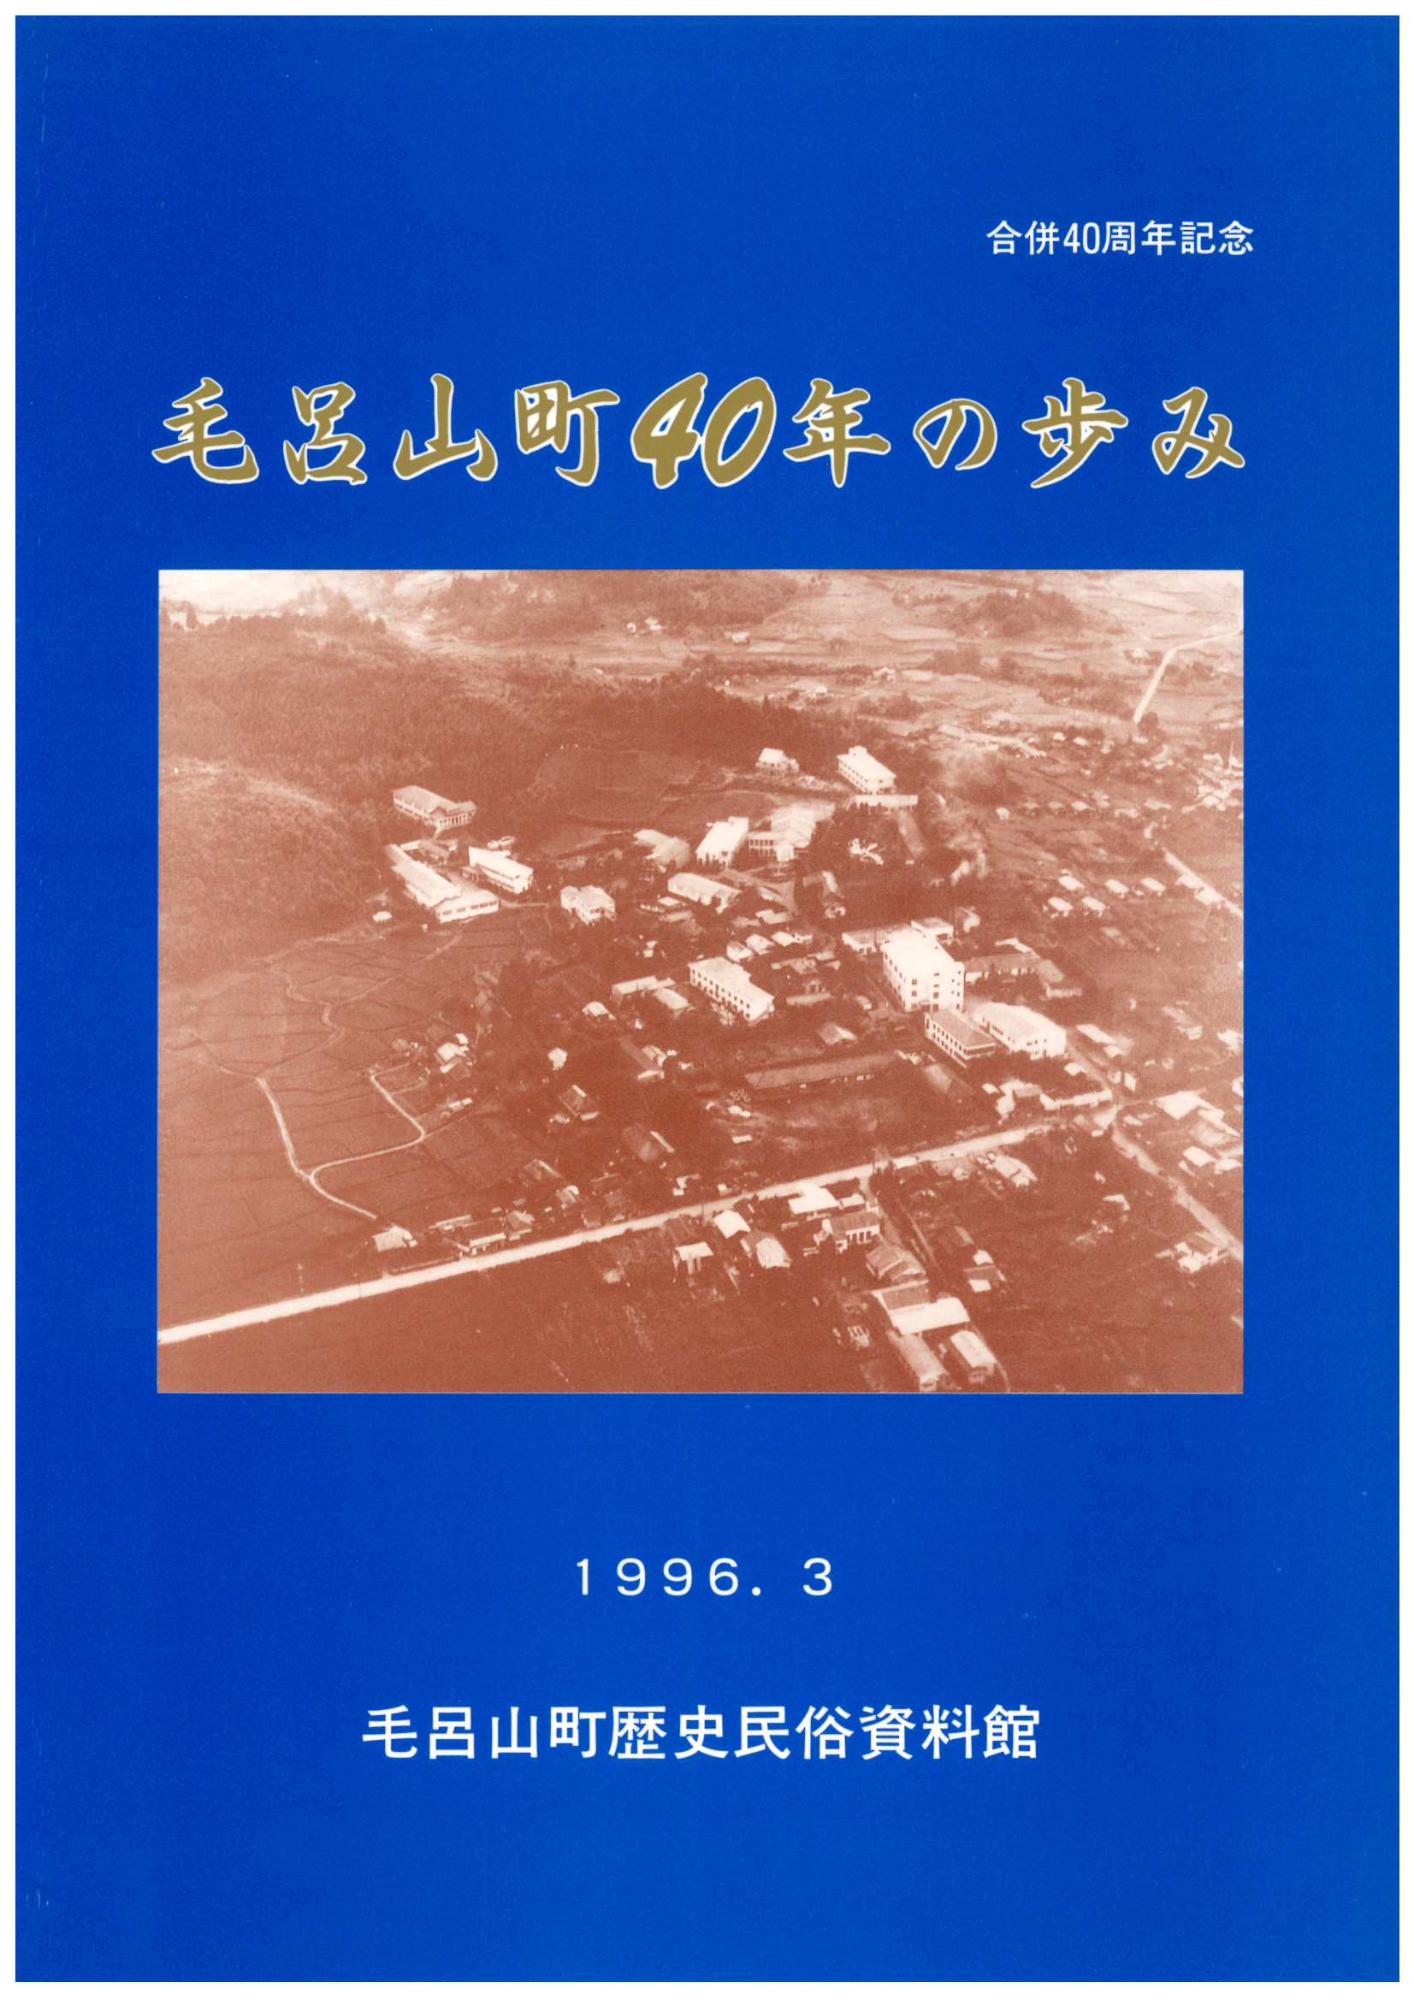 合併40周年記念企画展 毛呂山町40年の歩みの図録表紙